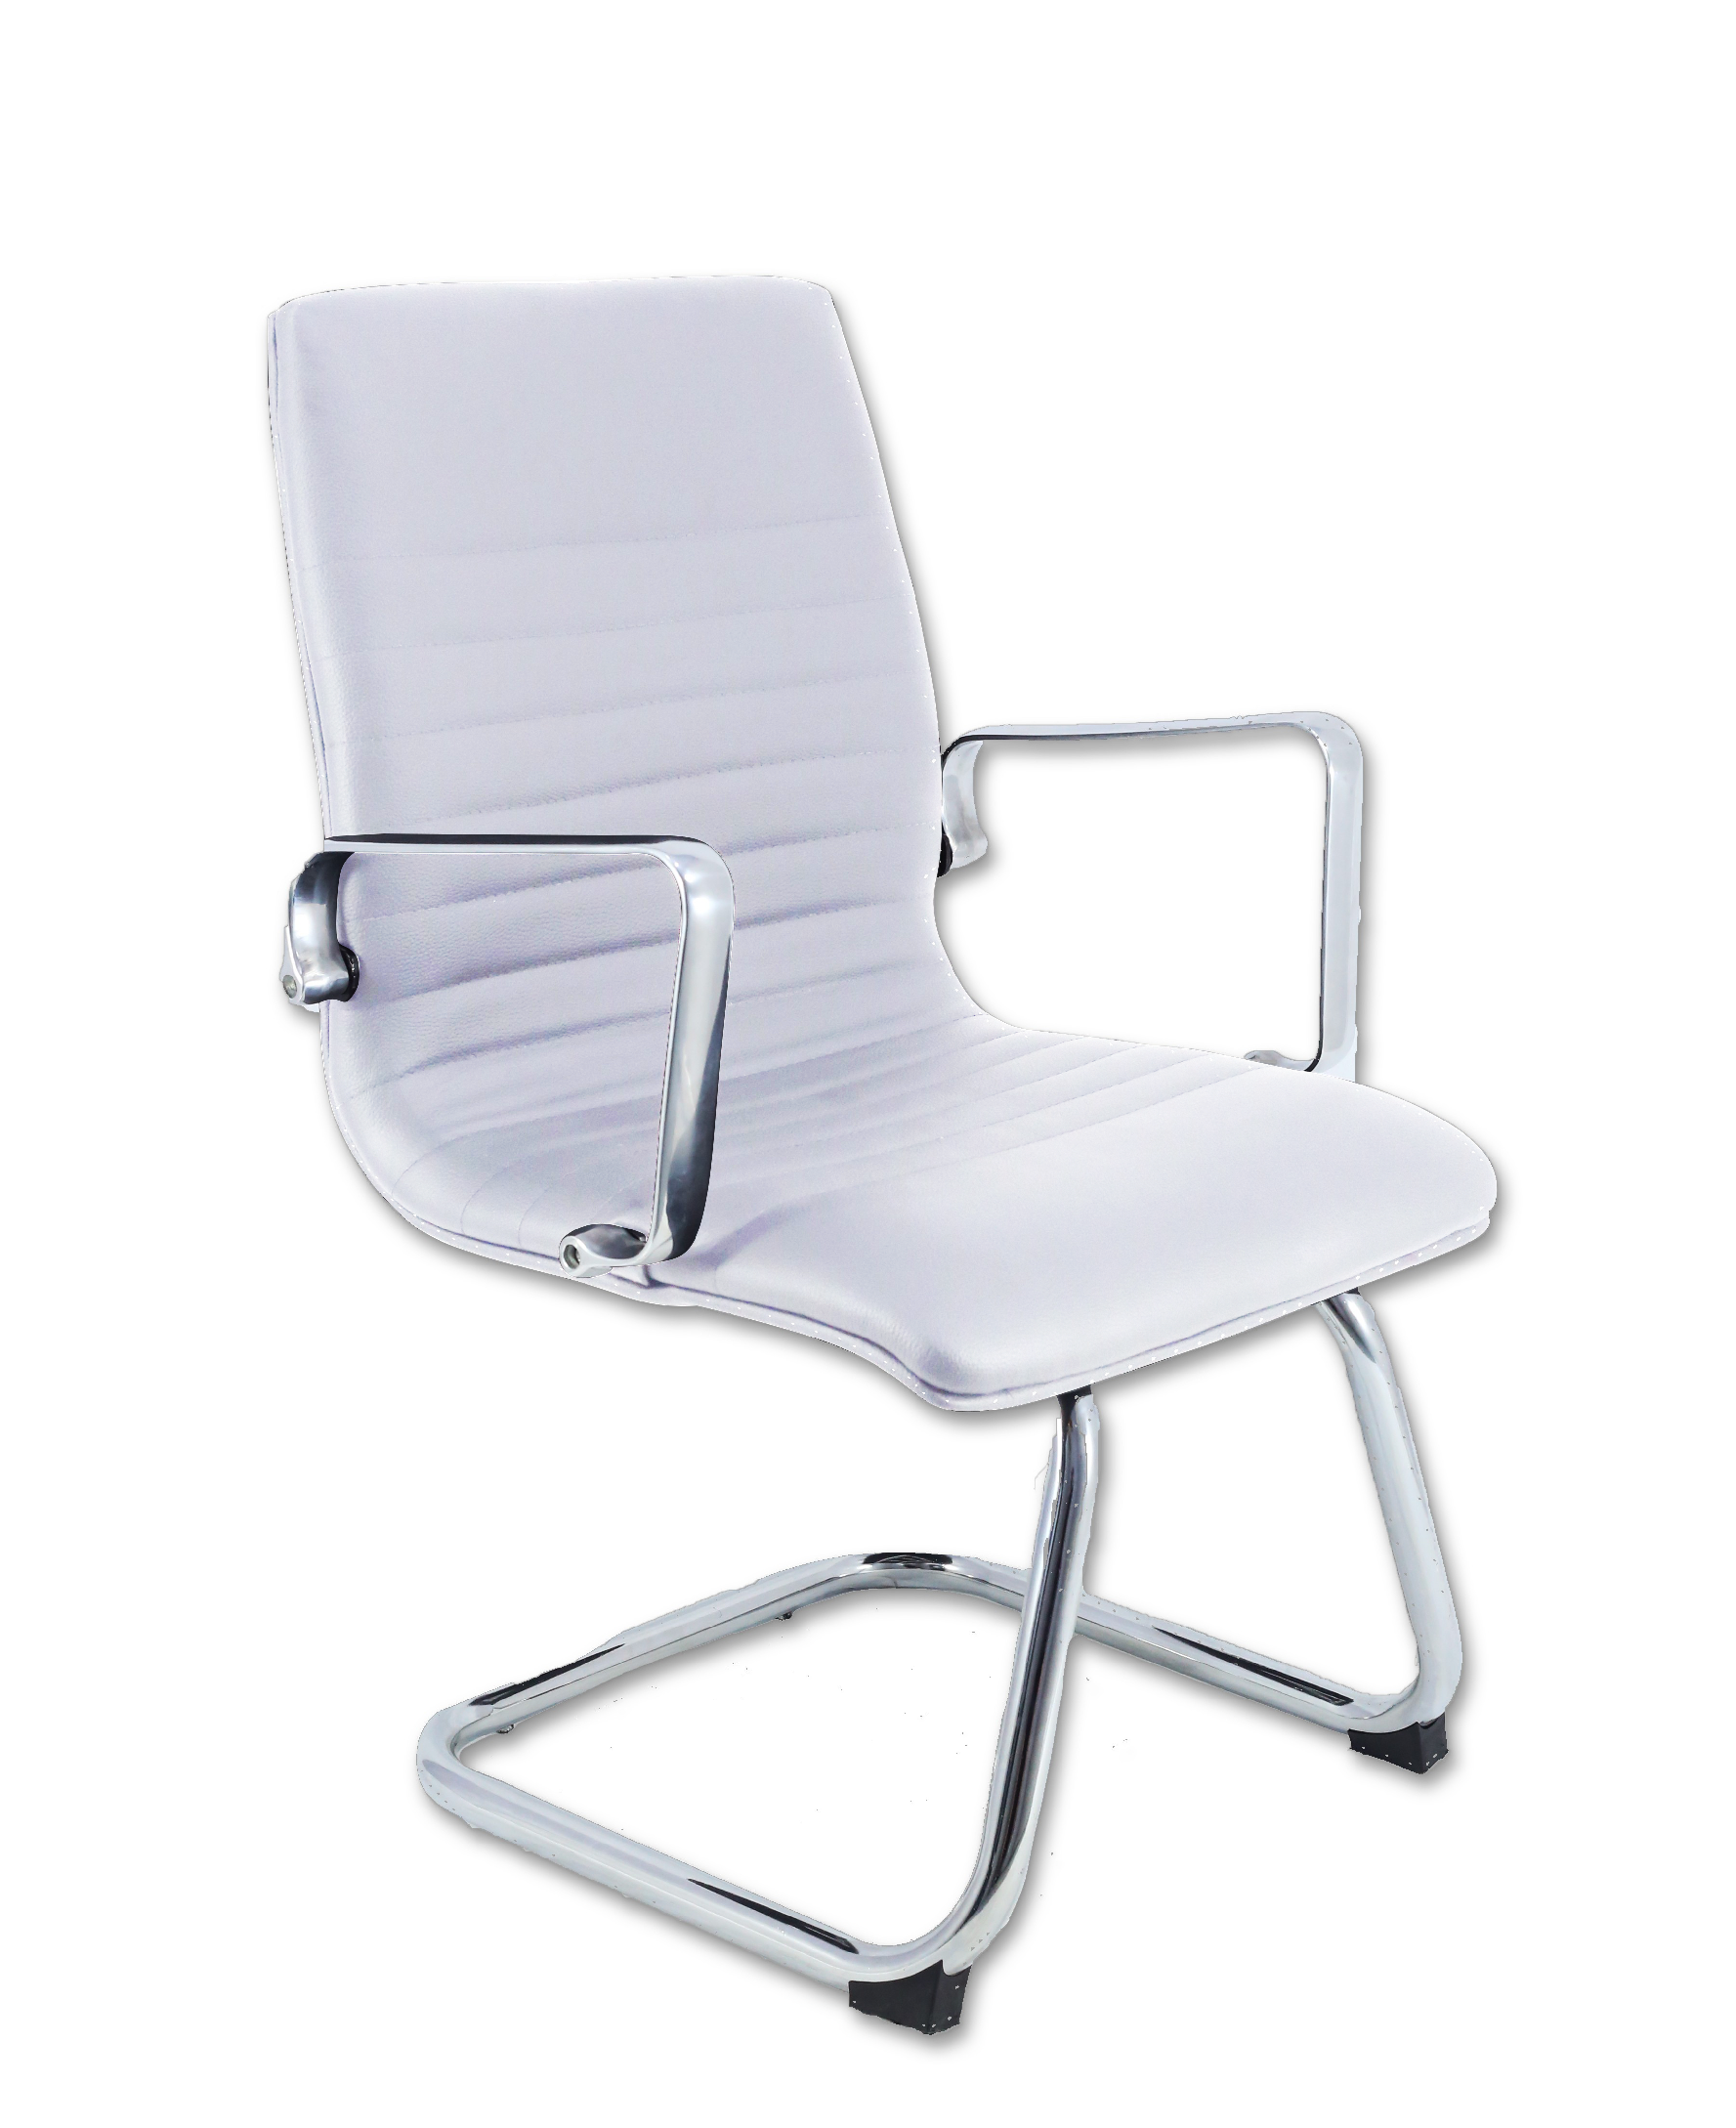 Cadeira Diretor Inspired Eames Inspired fixa Office Couro Sintético Branca